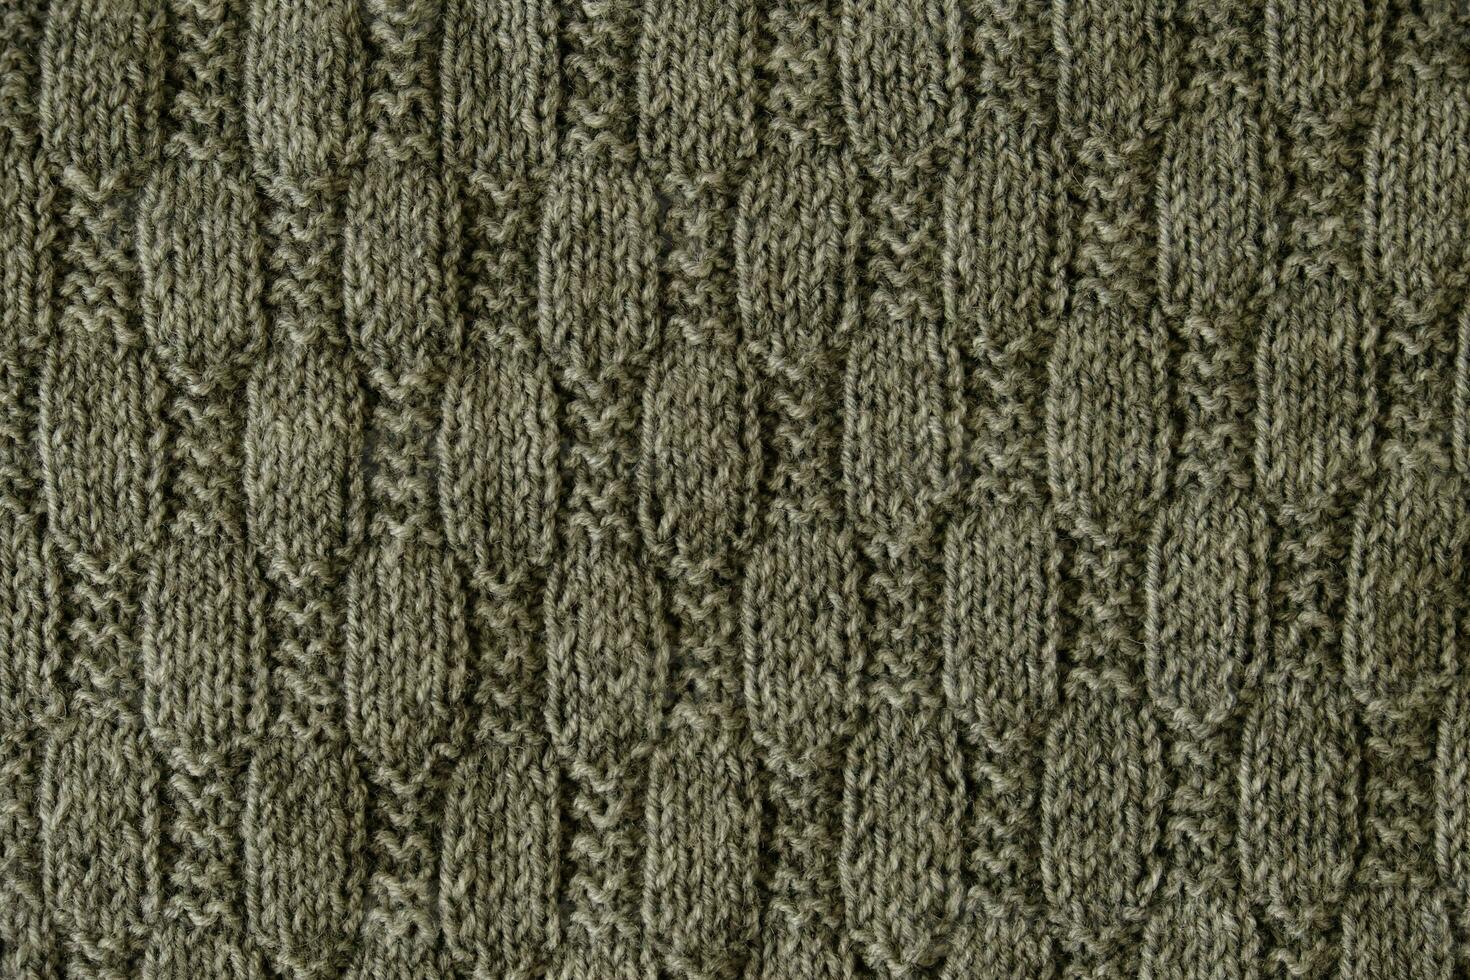 textur av slät stickat grå Tröja med mönster. topp se, närbild. handgjort stickning ull eller bomull tyg textur. bakgrund med stickat blad form, stickning mönster med kablar. foto